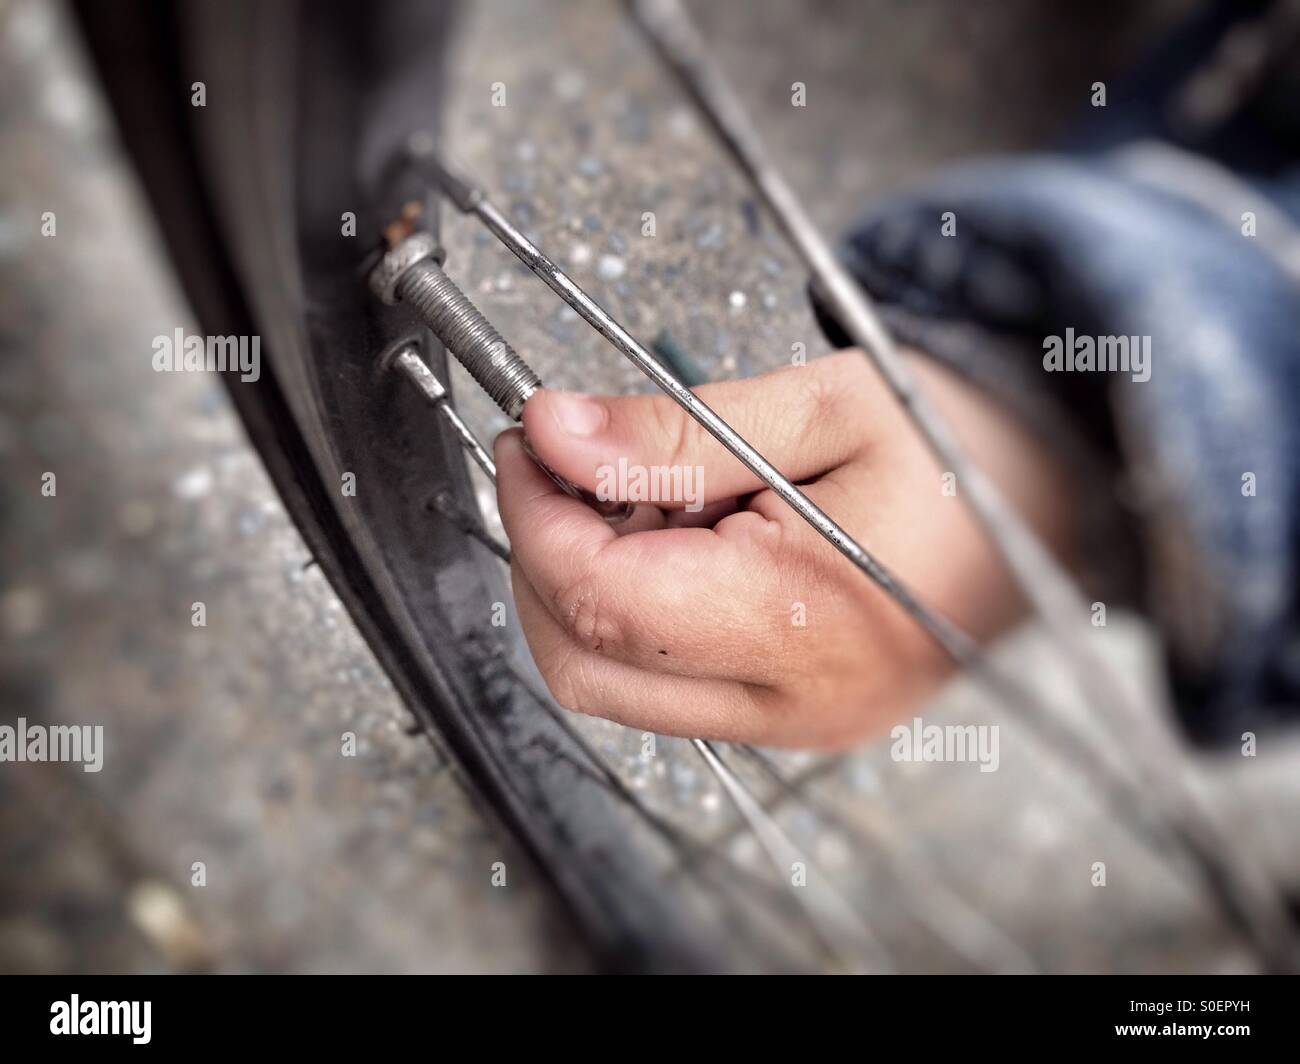 Un bimbo a mano la rimozione del tappo della valvola su di una ruota di bicicletta Foto Stock